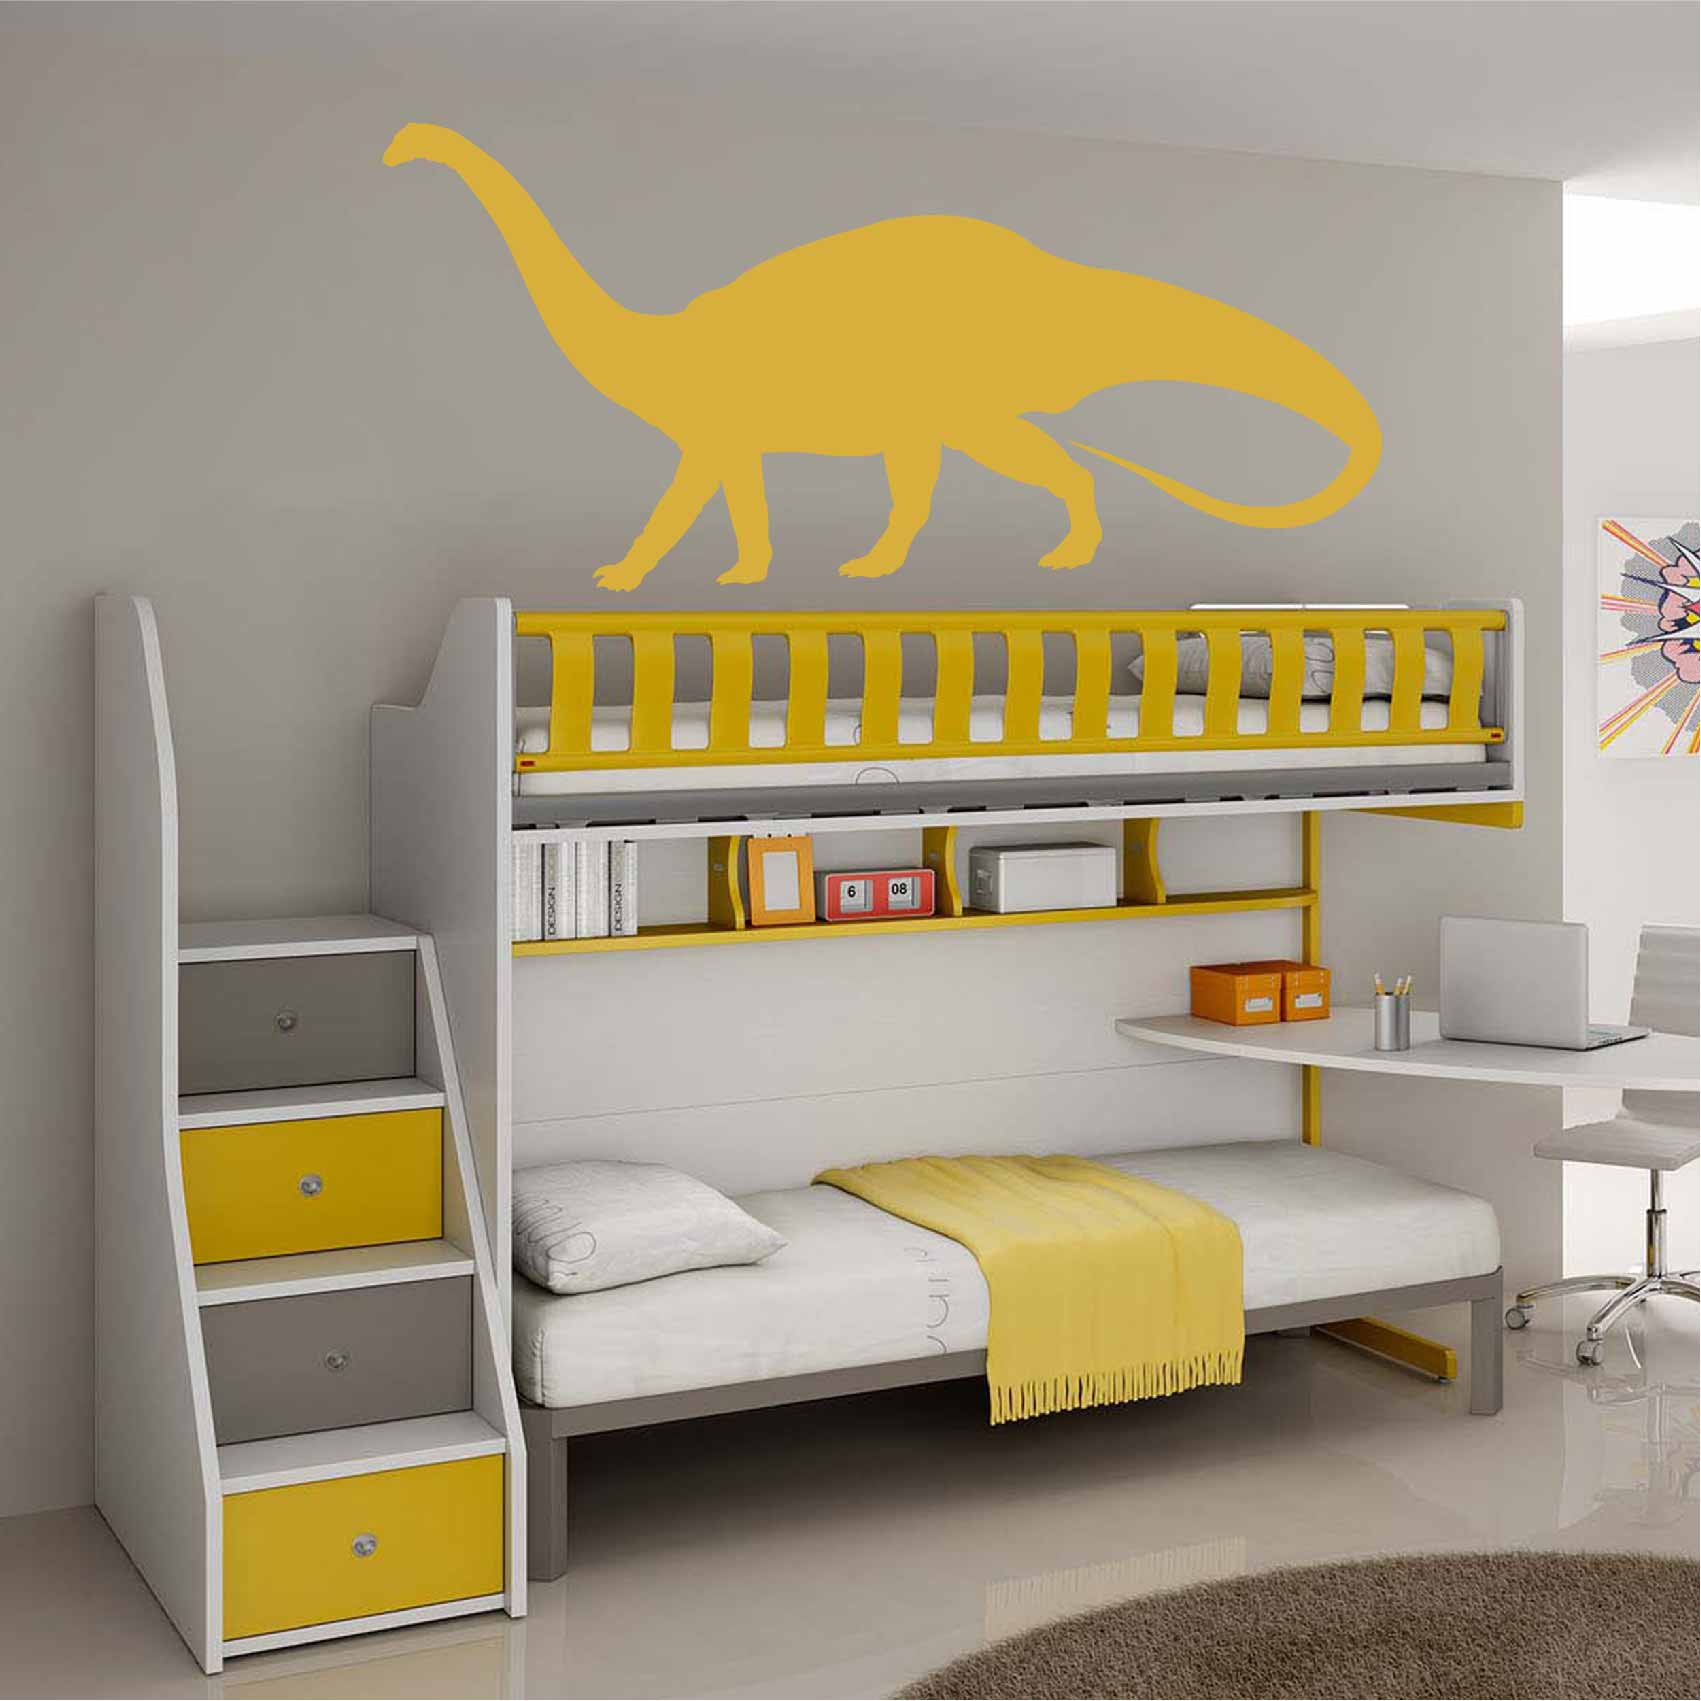 Sticker dinosaure décoration chambre d'enfant. Stickers muraux enfant